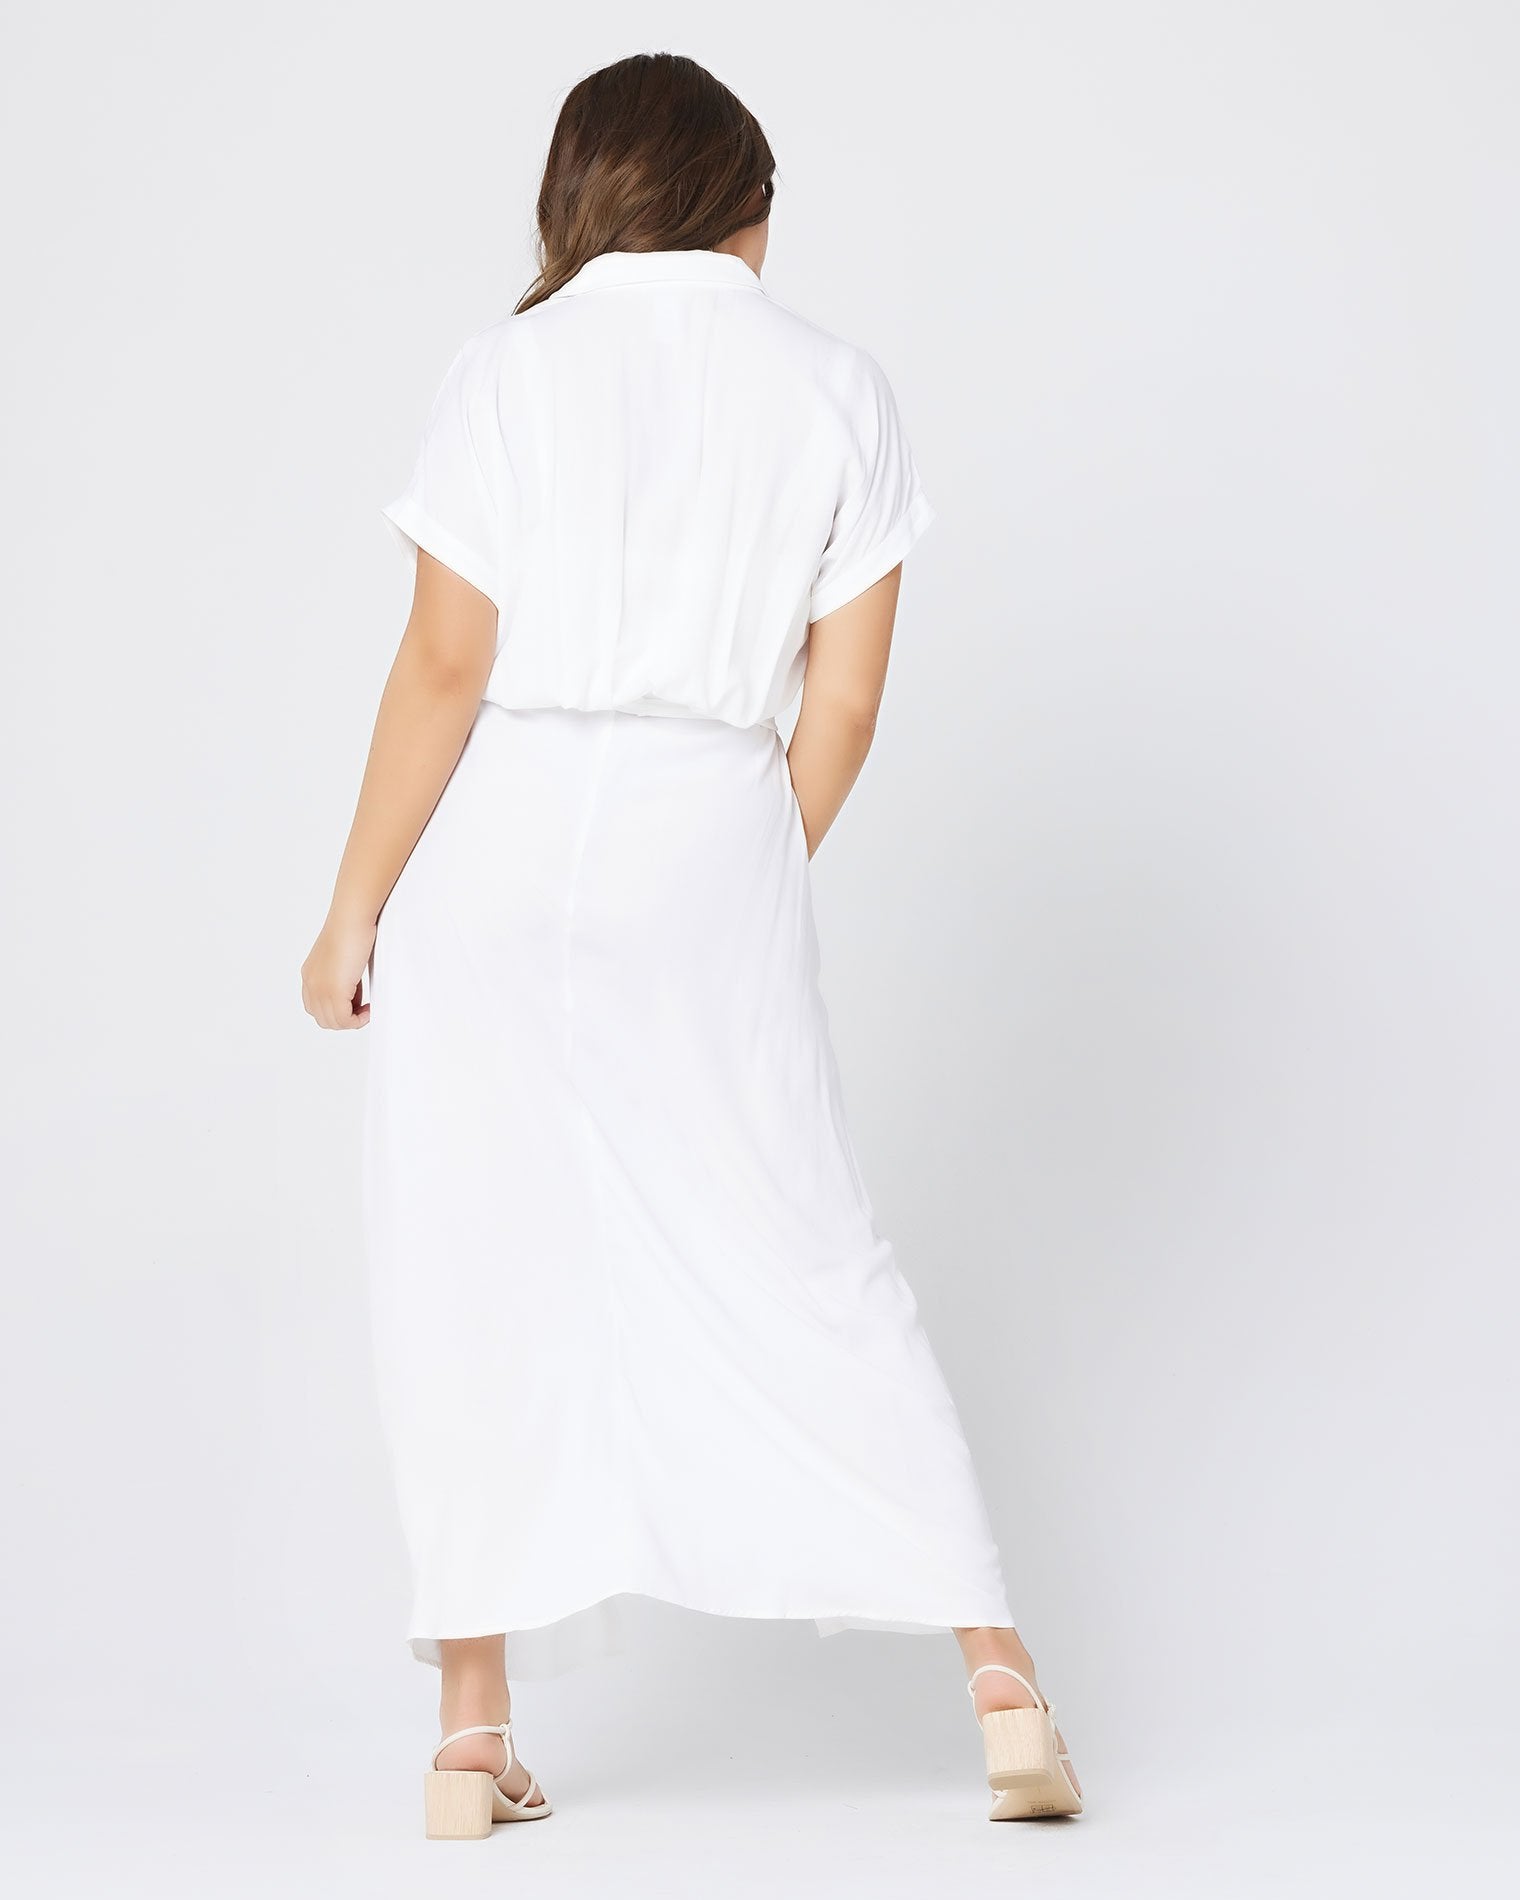 Prism Dress White | Model: Kacie (size: XL)